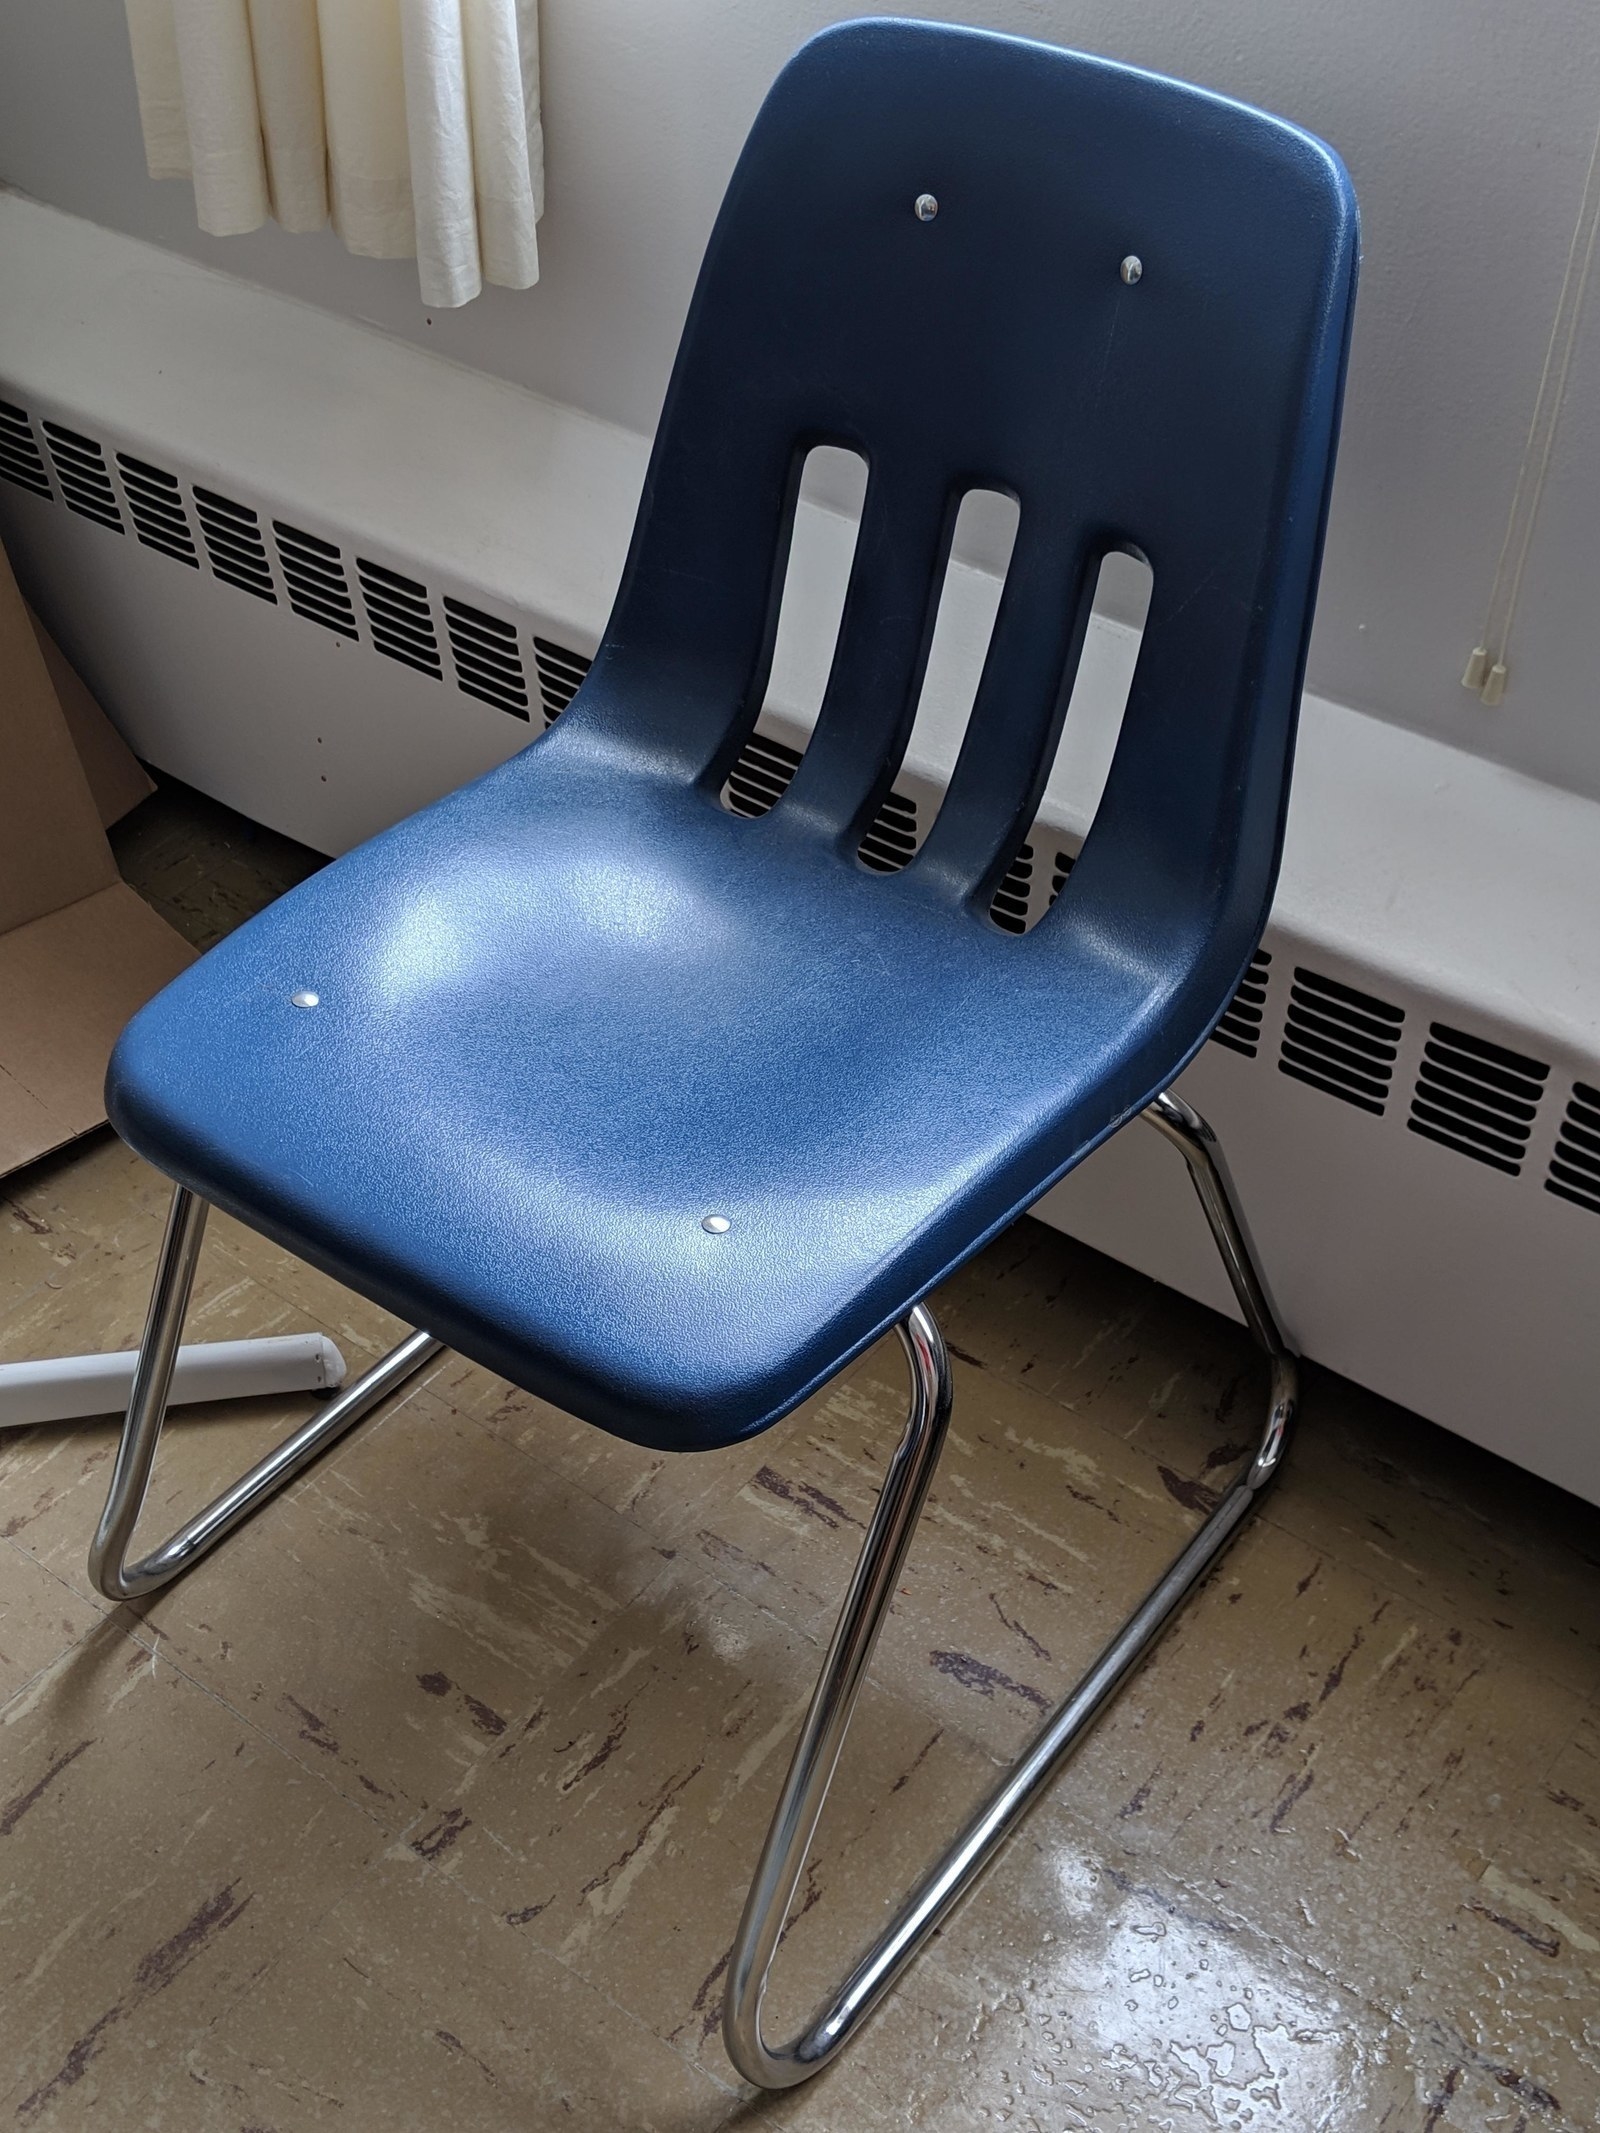 a blue classroom chair